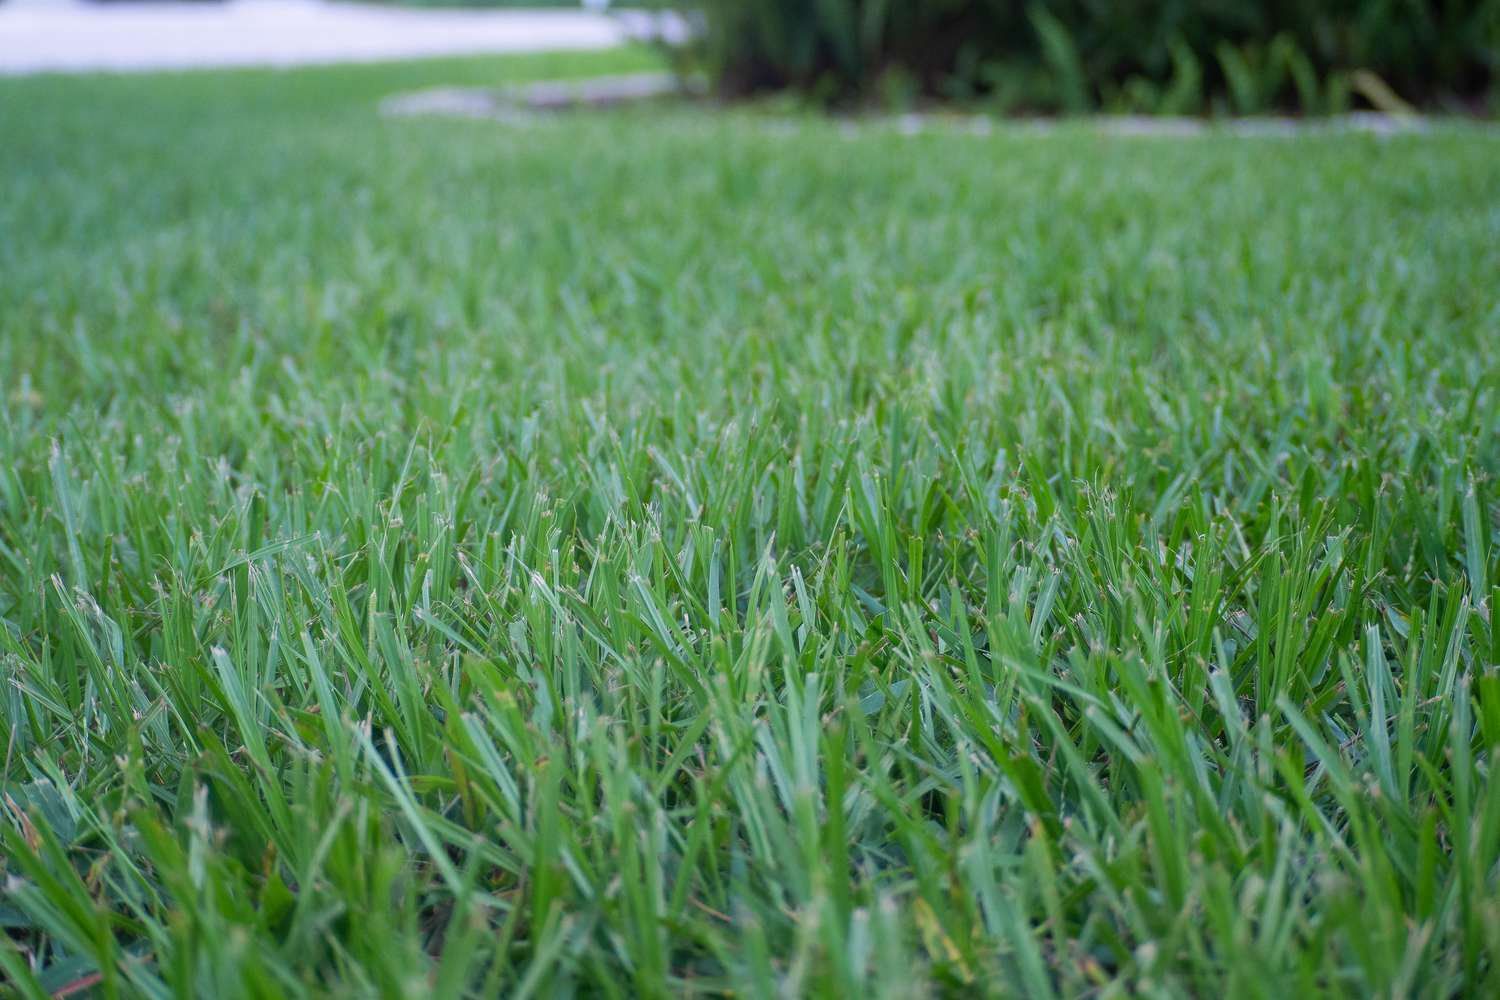 Bahia grass freshly cut in lawn